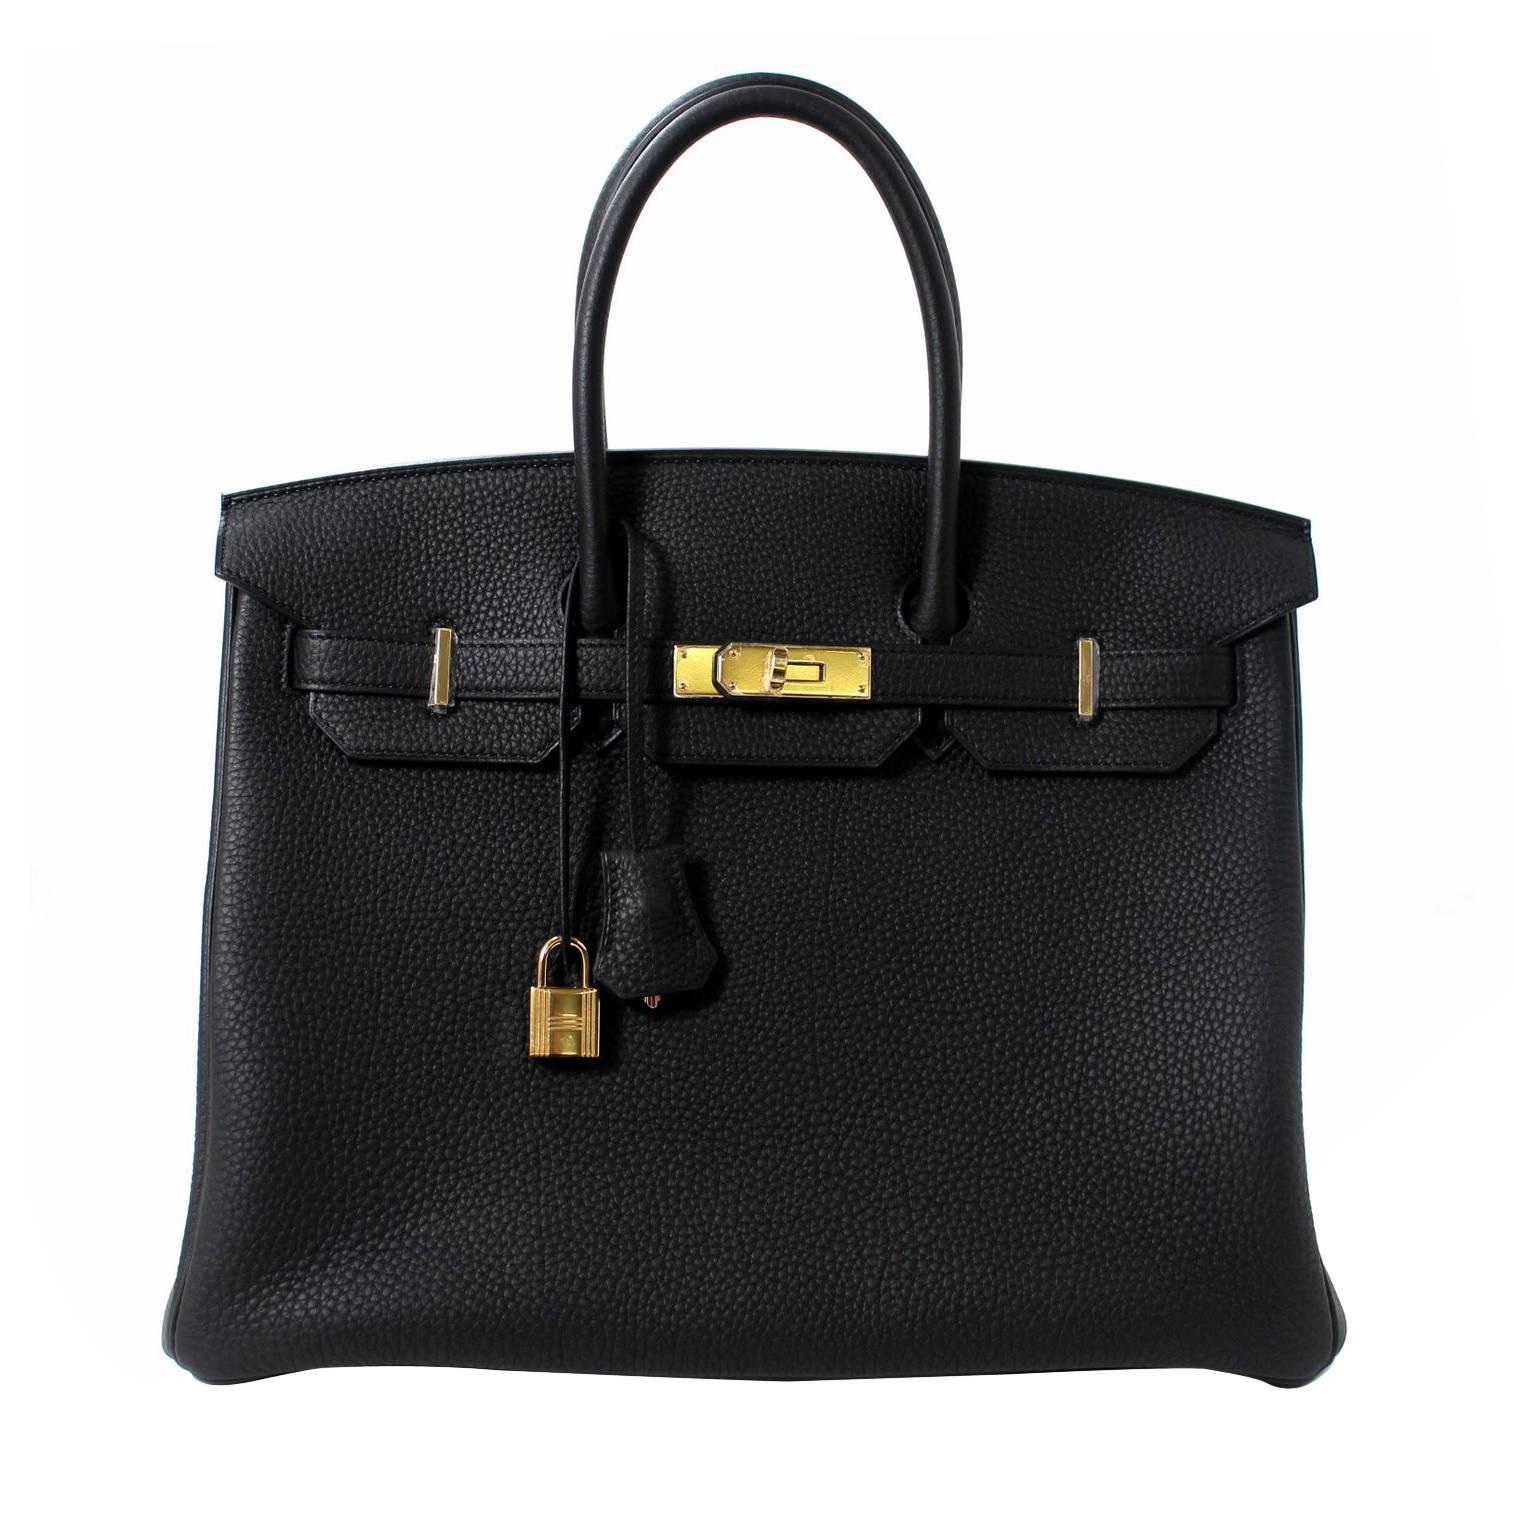 Hermes Black Birkin Bag- 35 cm, Togo Leather with Gold Hardware